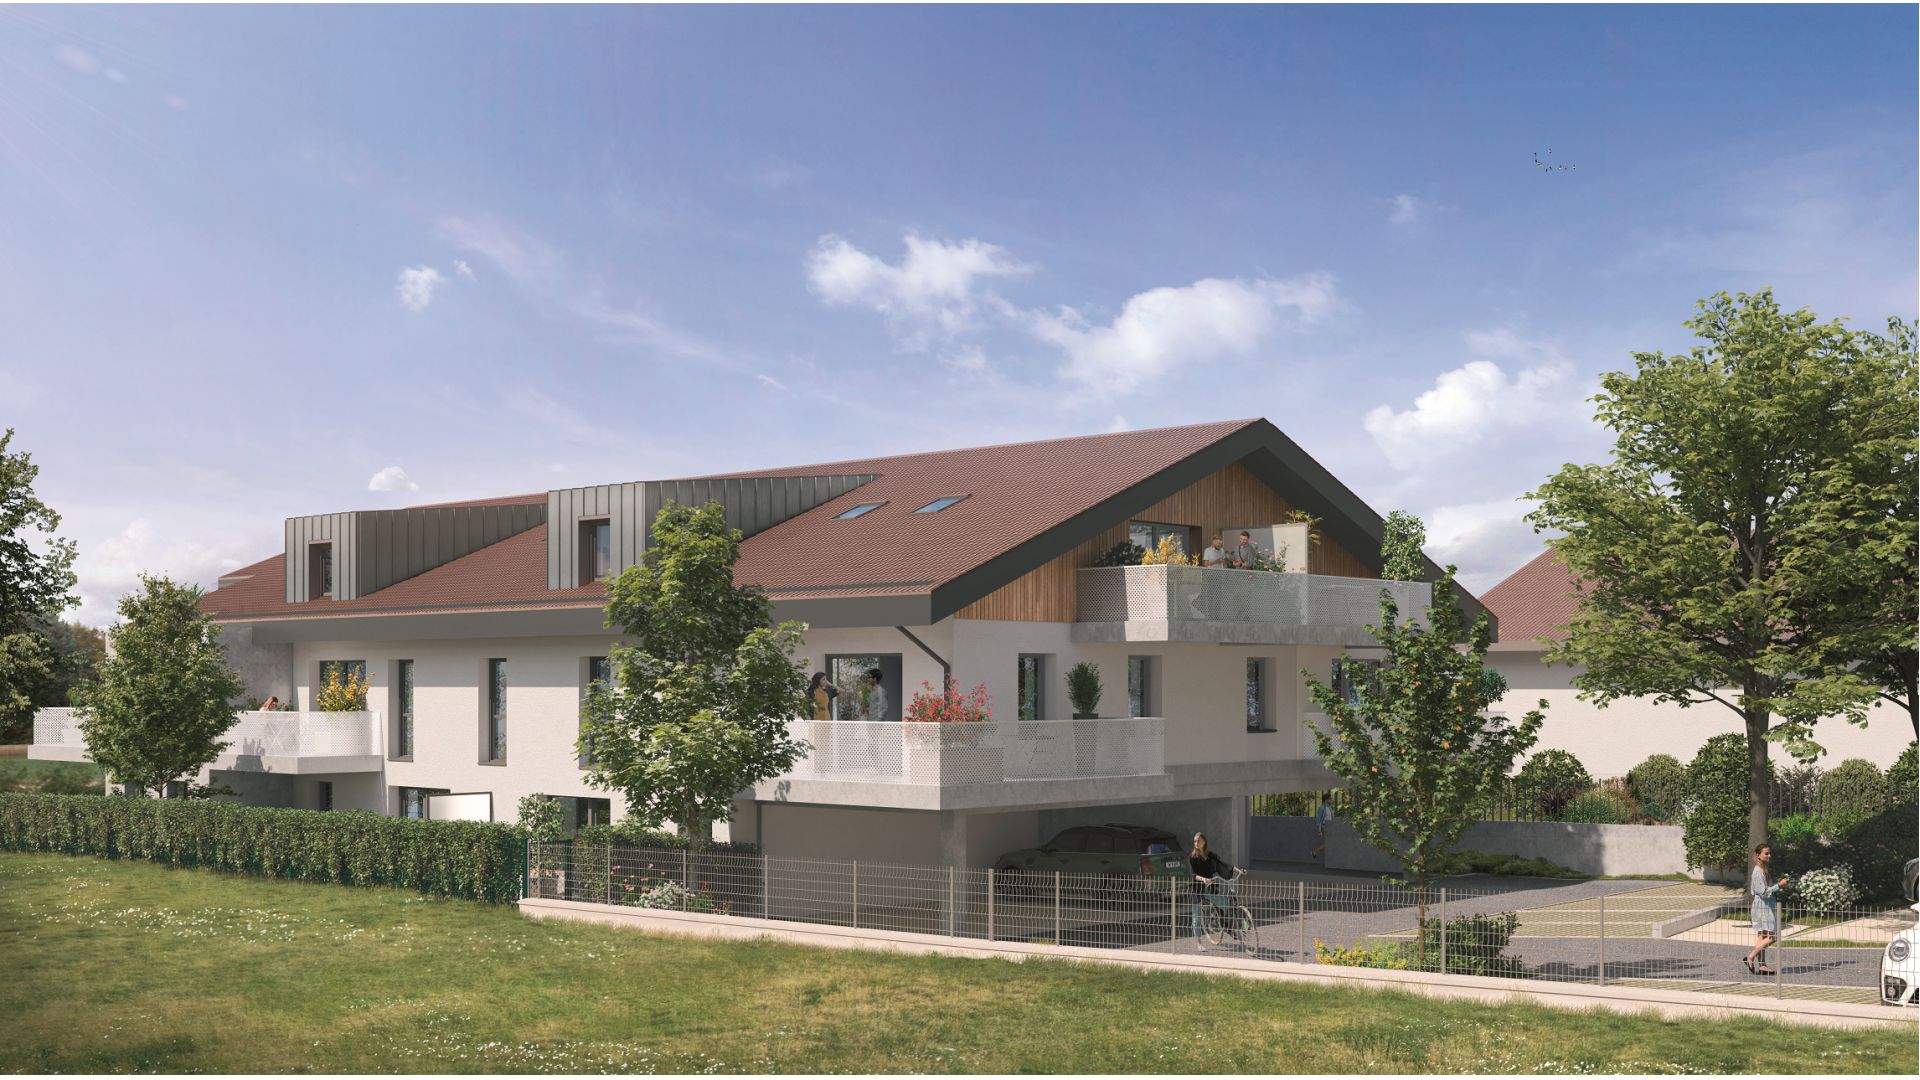 Greencity immobilier - achat appartements neufs du T2 au T4 - Résidence Amédée - 74140 Massongy